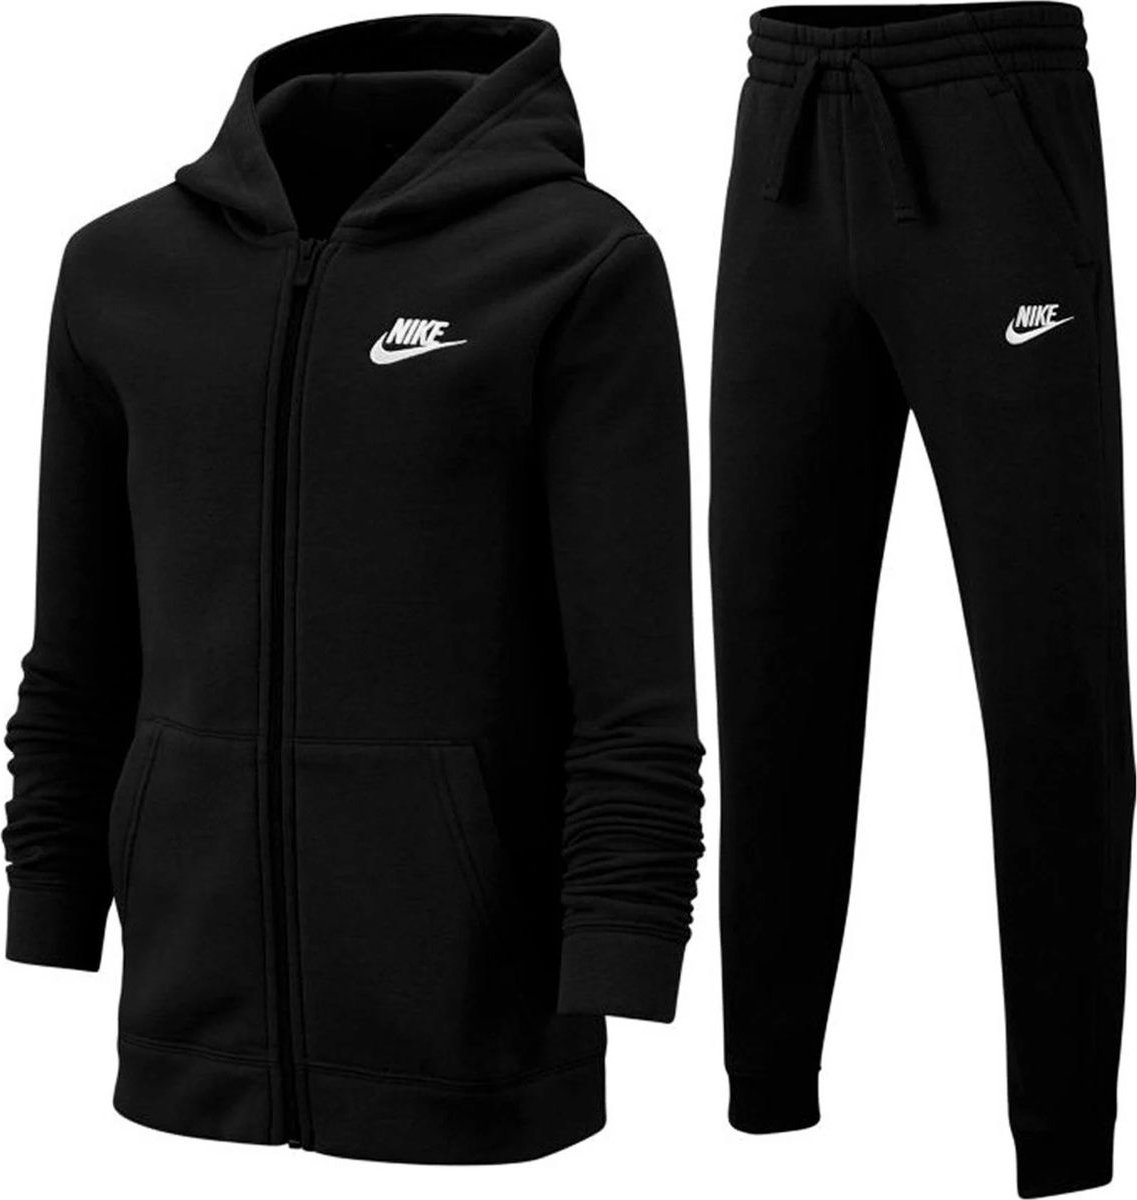 Afwijzen Nodig hebben Onafhankelijkheid Nike Sportswear Core Jongens Trainingspak - Maat 146 - Zwart | bol.com